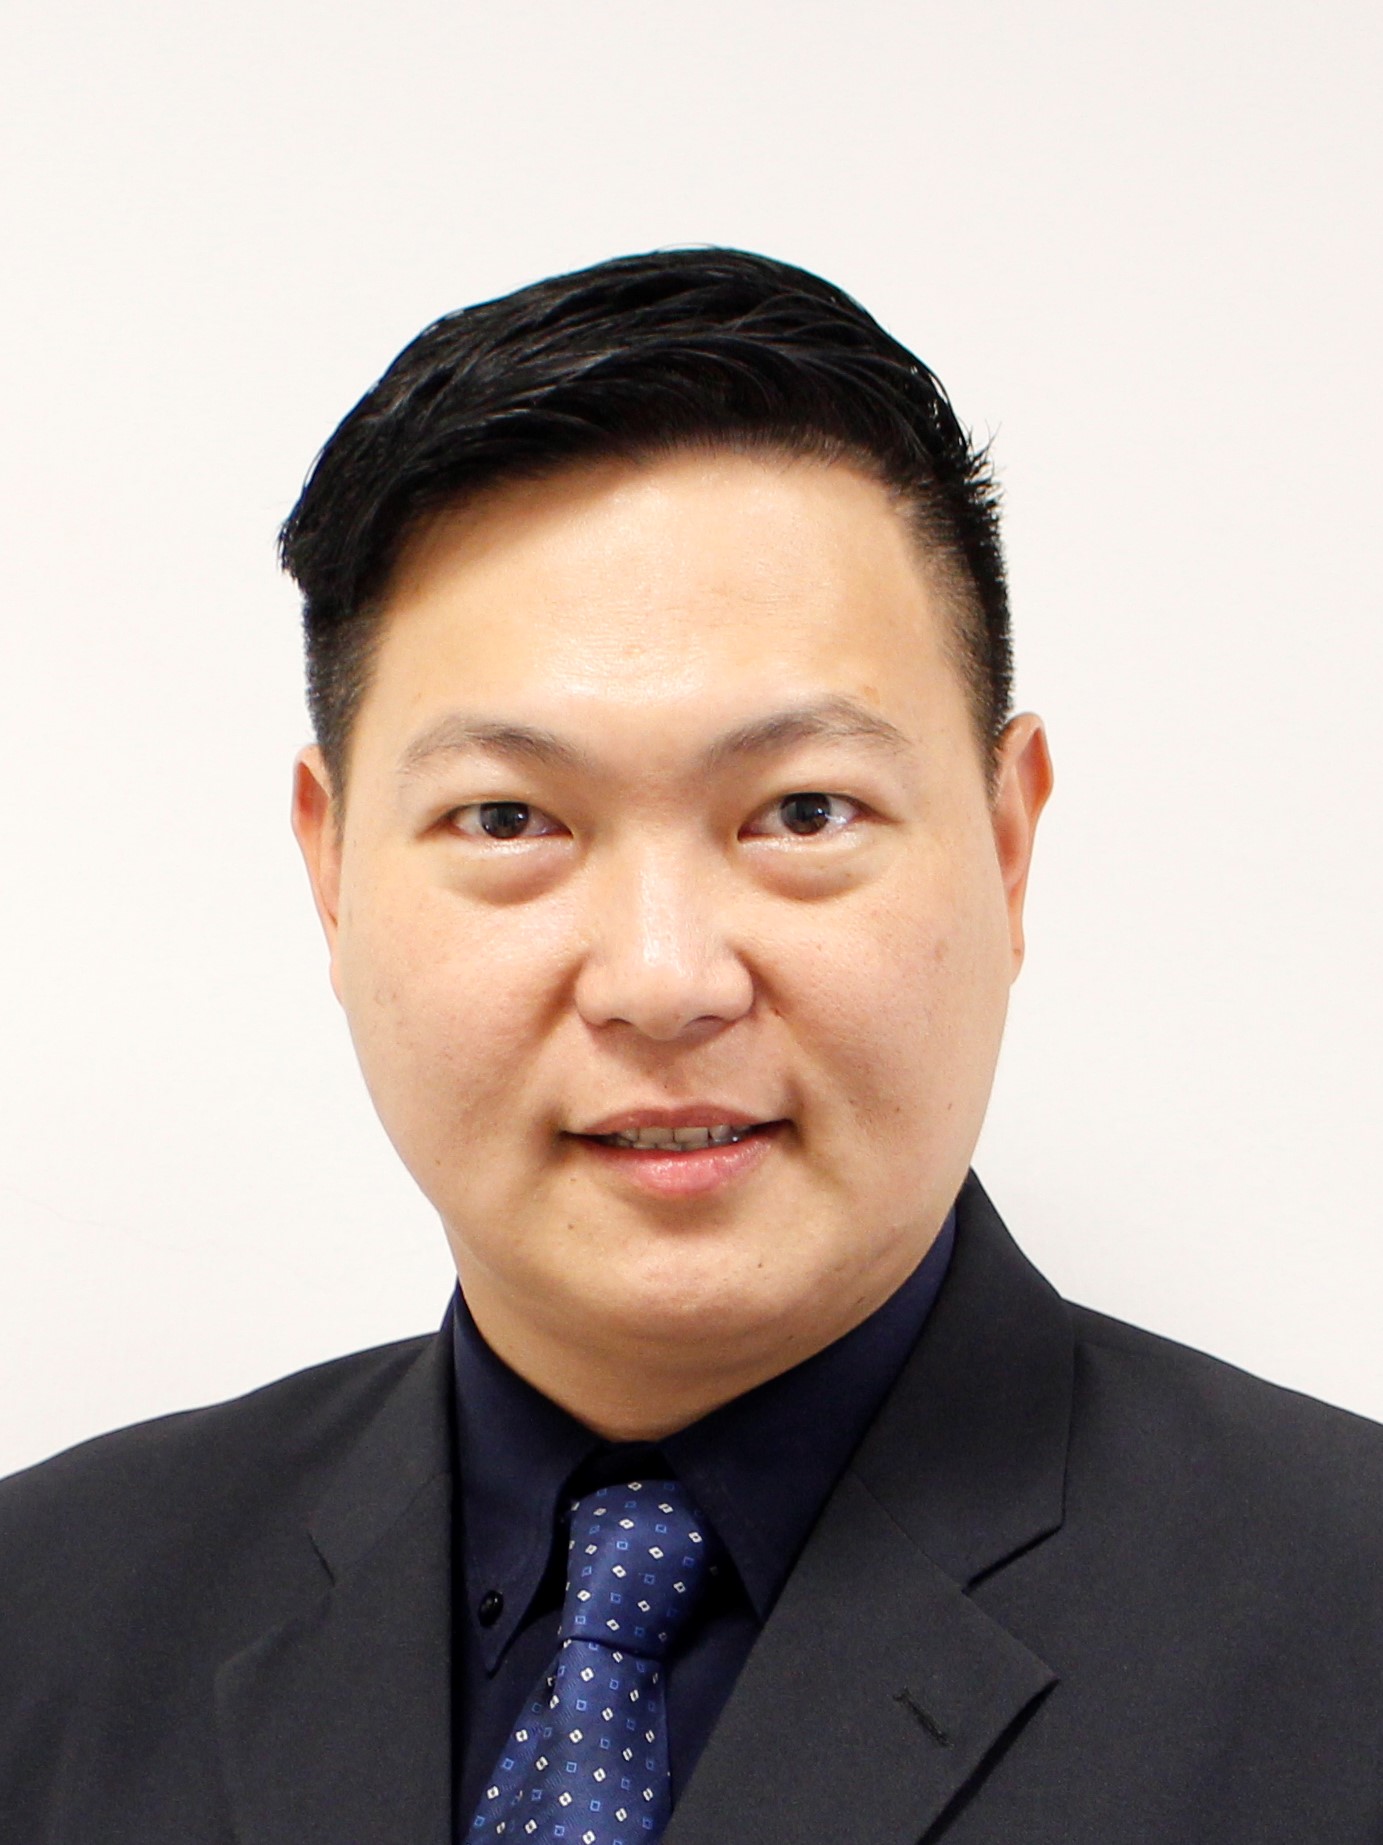 Lt. Dr. John Shia Kwong Siew